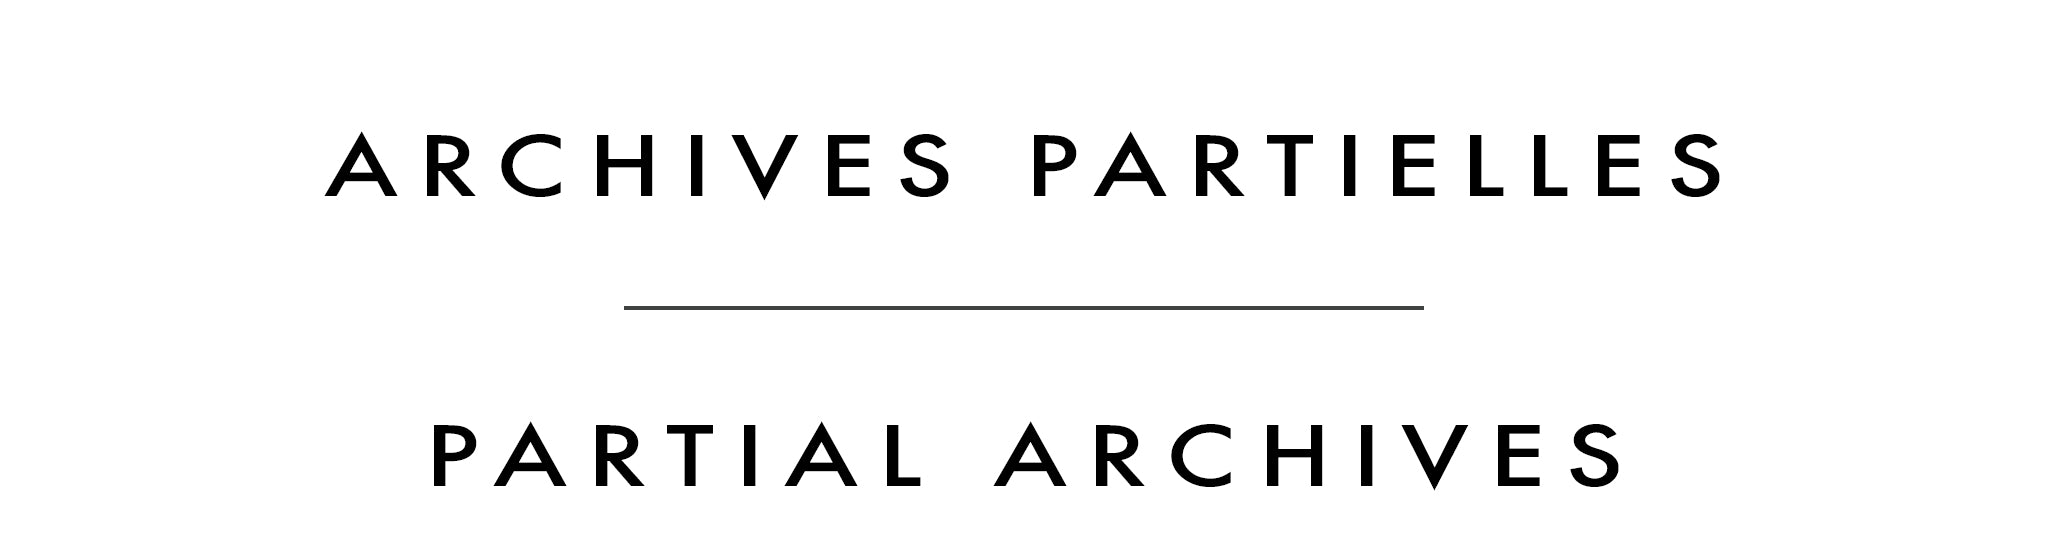 Archives partielles | Partial Archives | Vladimir Horik